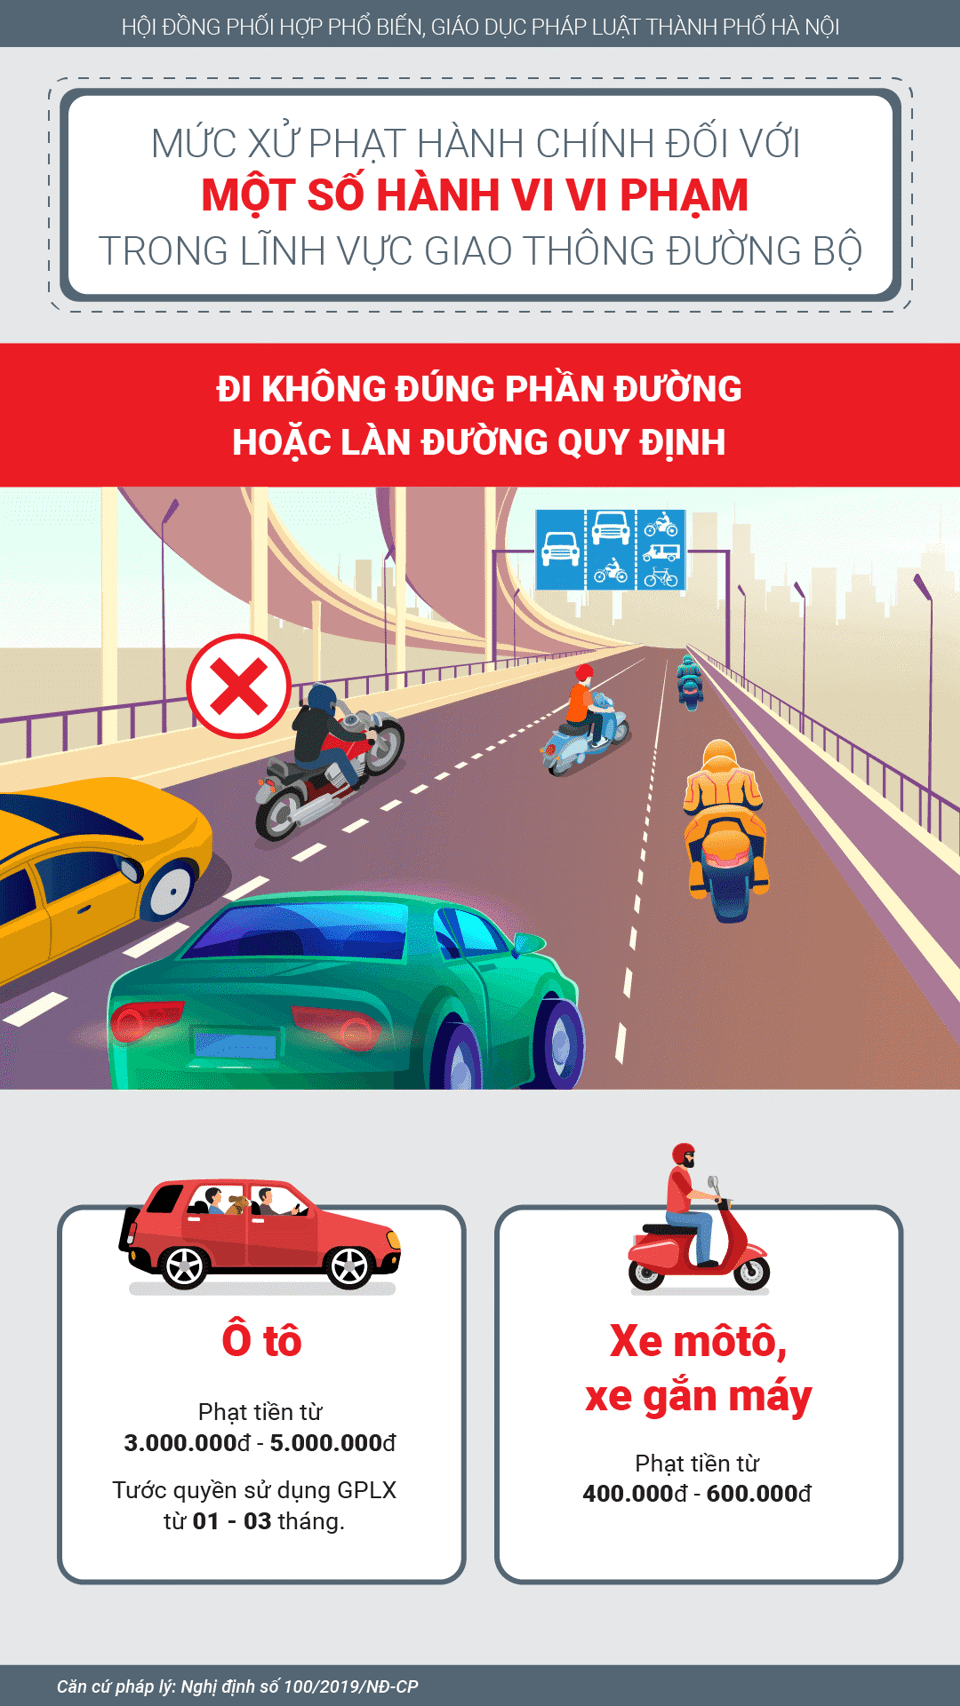 [Infographic] Mức phạt vi phạm trong lĩnh vực giao thông đường bộ - Ảnh 2